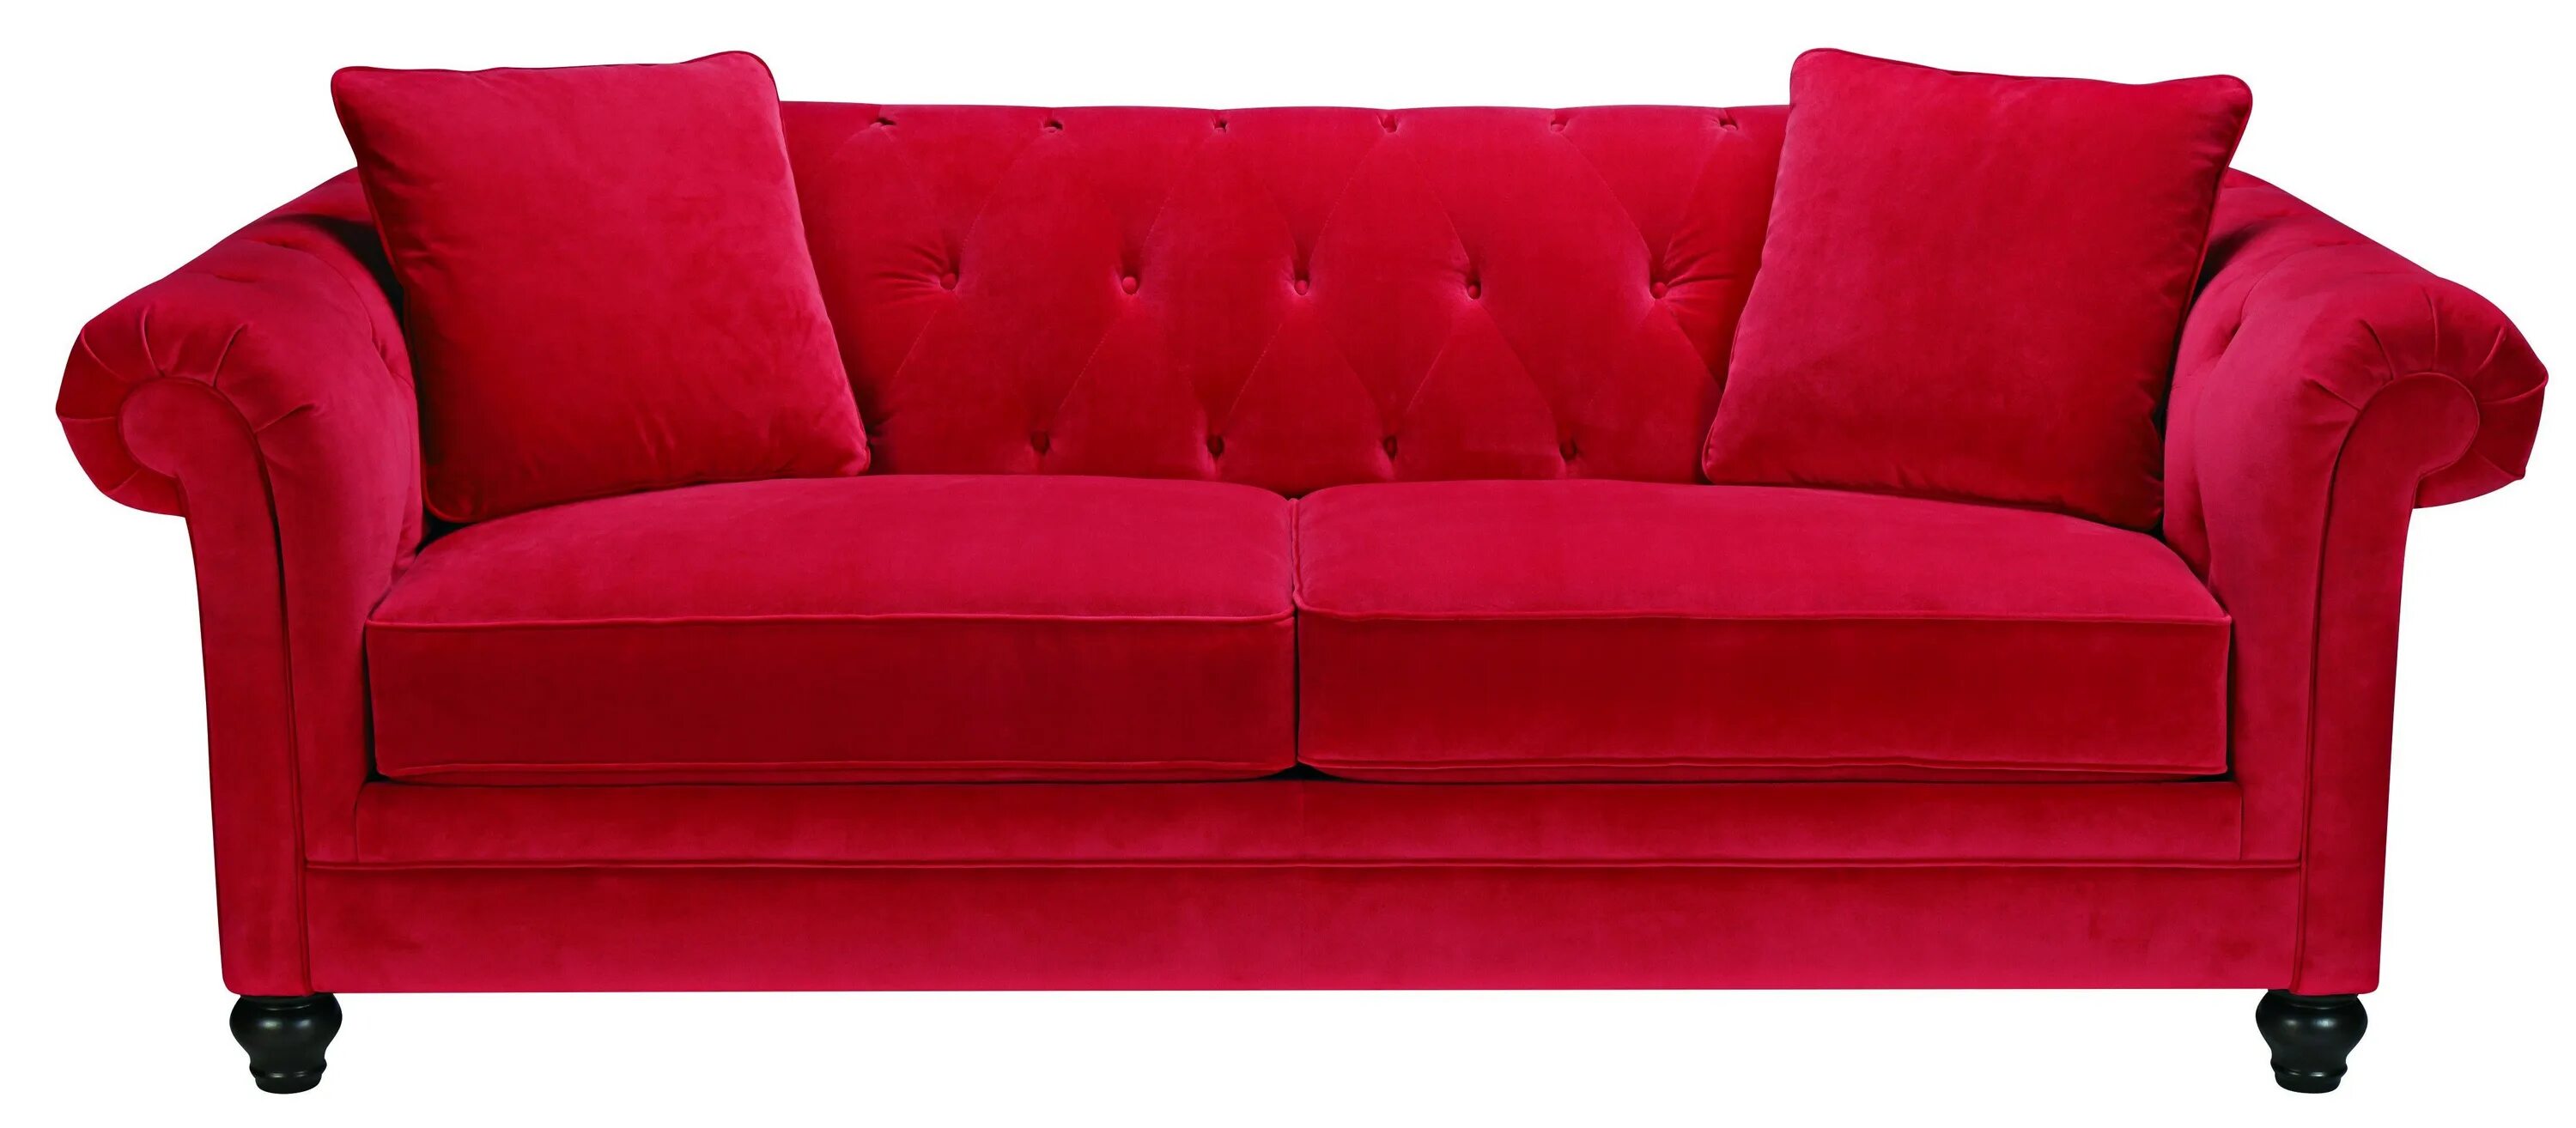 Красный диван. Красный диван на белом фоне. Диван для фотошопа. Диван без фона.